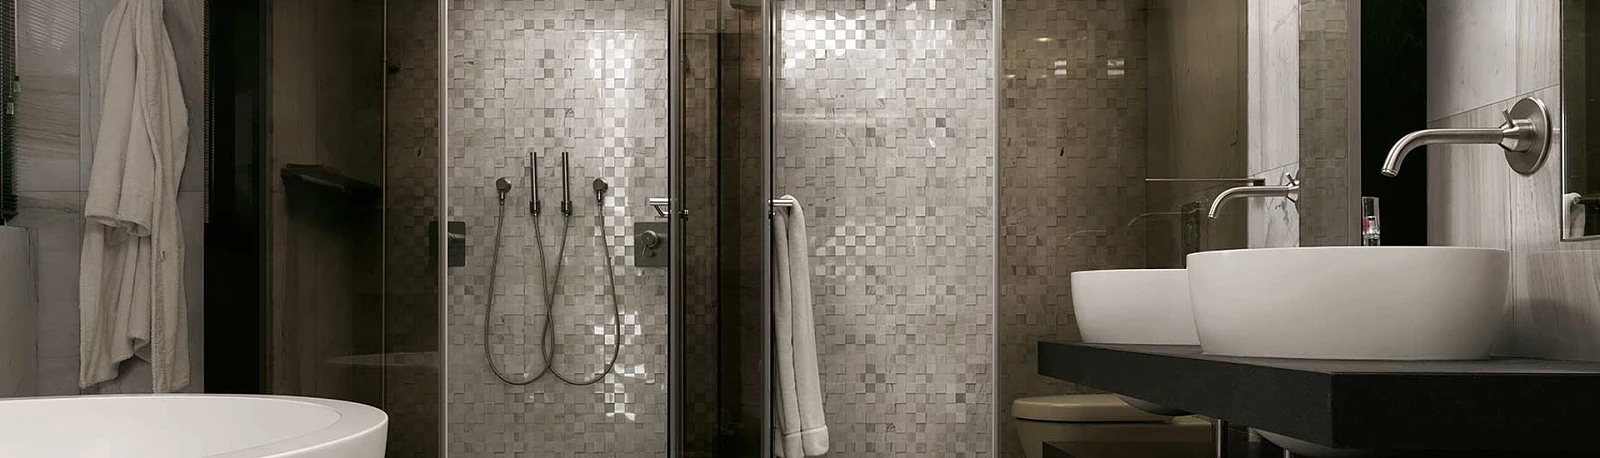 łaz_k.jpg  Minimalistyczna łazienka w jasnych kolorach – twoja oaza spokoju i relaksu | Wyposażenie wnętrz MAXFLIZ